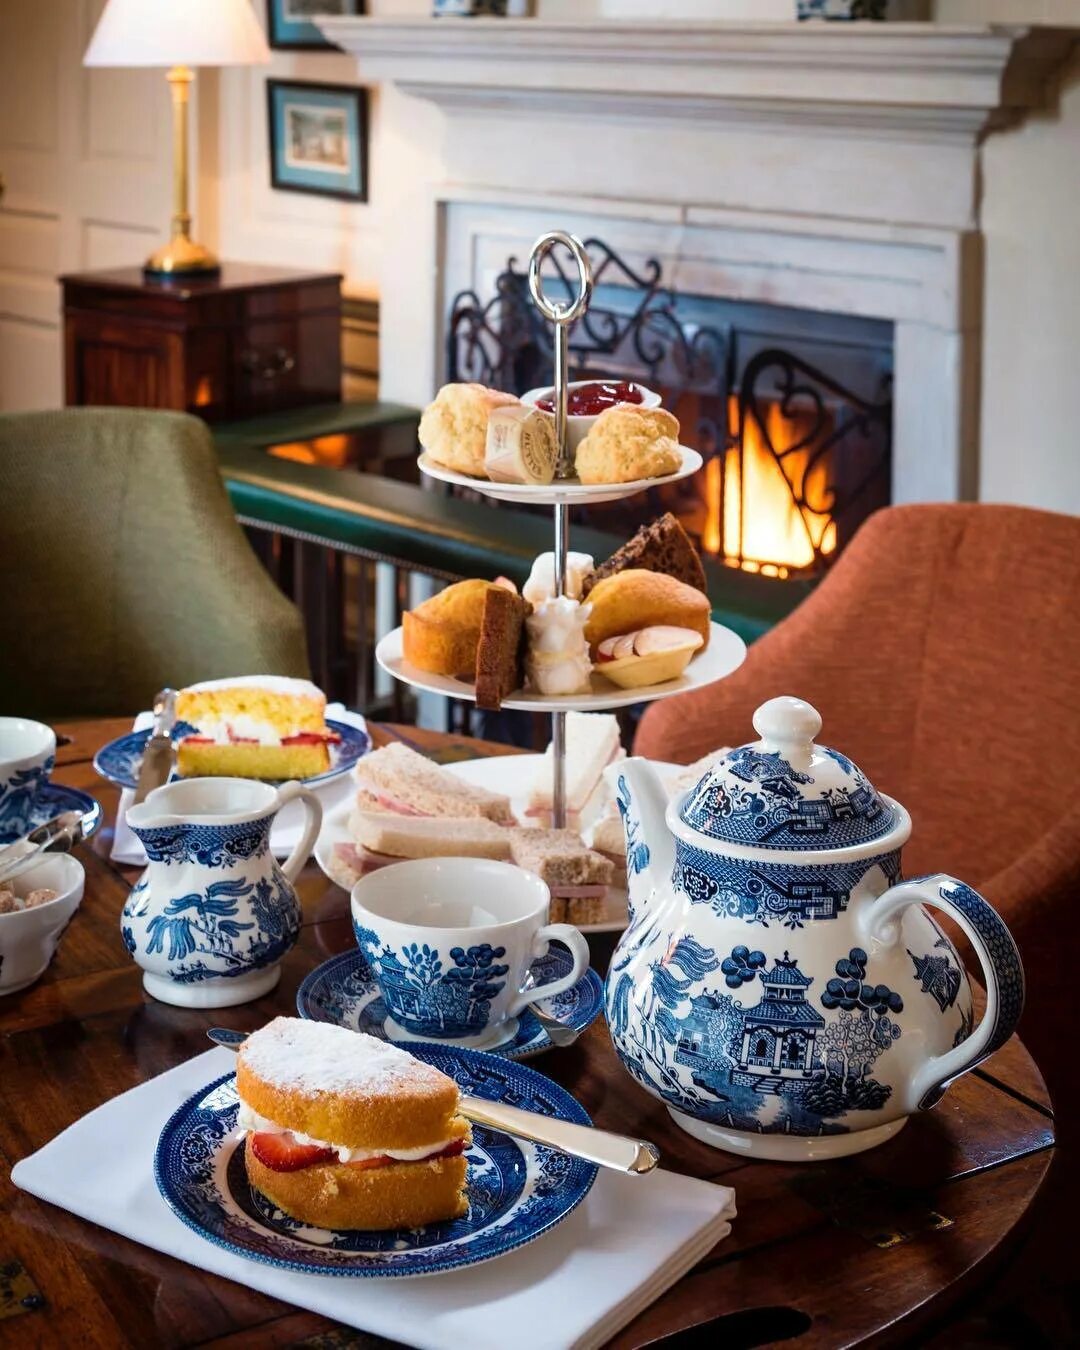 Afternoon Tea: традиционное английское чаепитие. Сервиз Churchill Blue Willow. Чайная церемония в Англии Файв оклок. Послеполуденный чай (afternoon Tea). После обеда подали чай